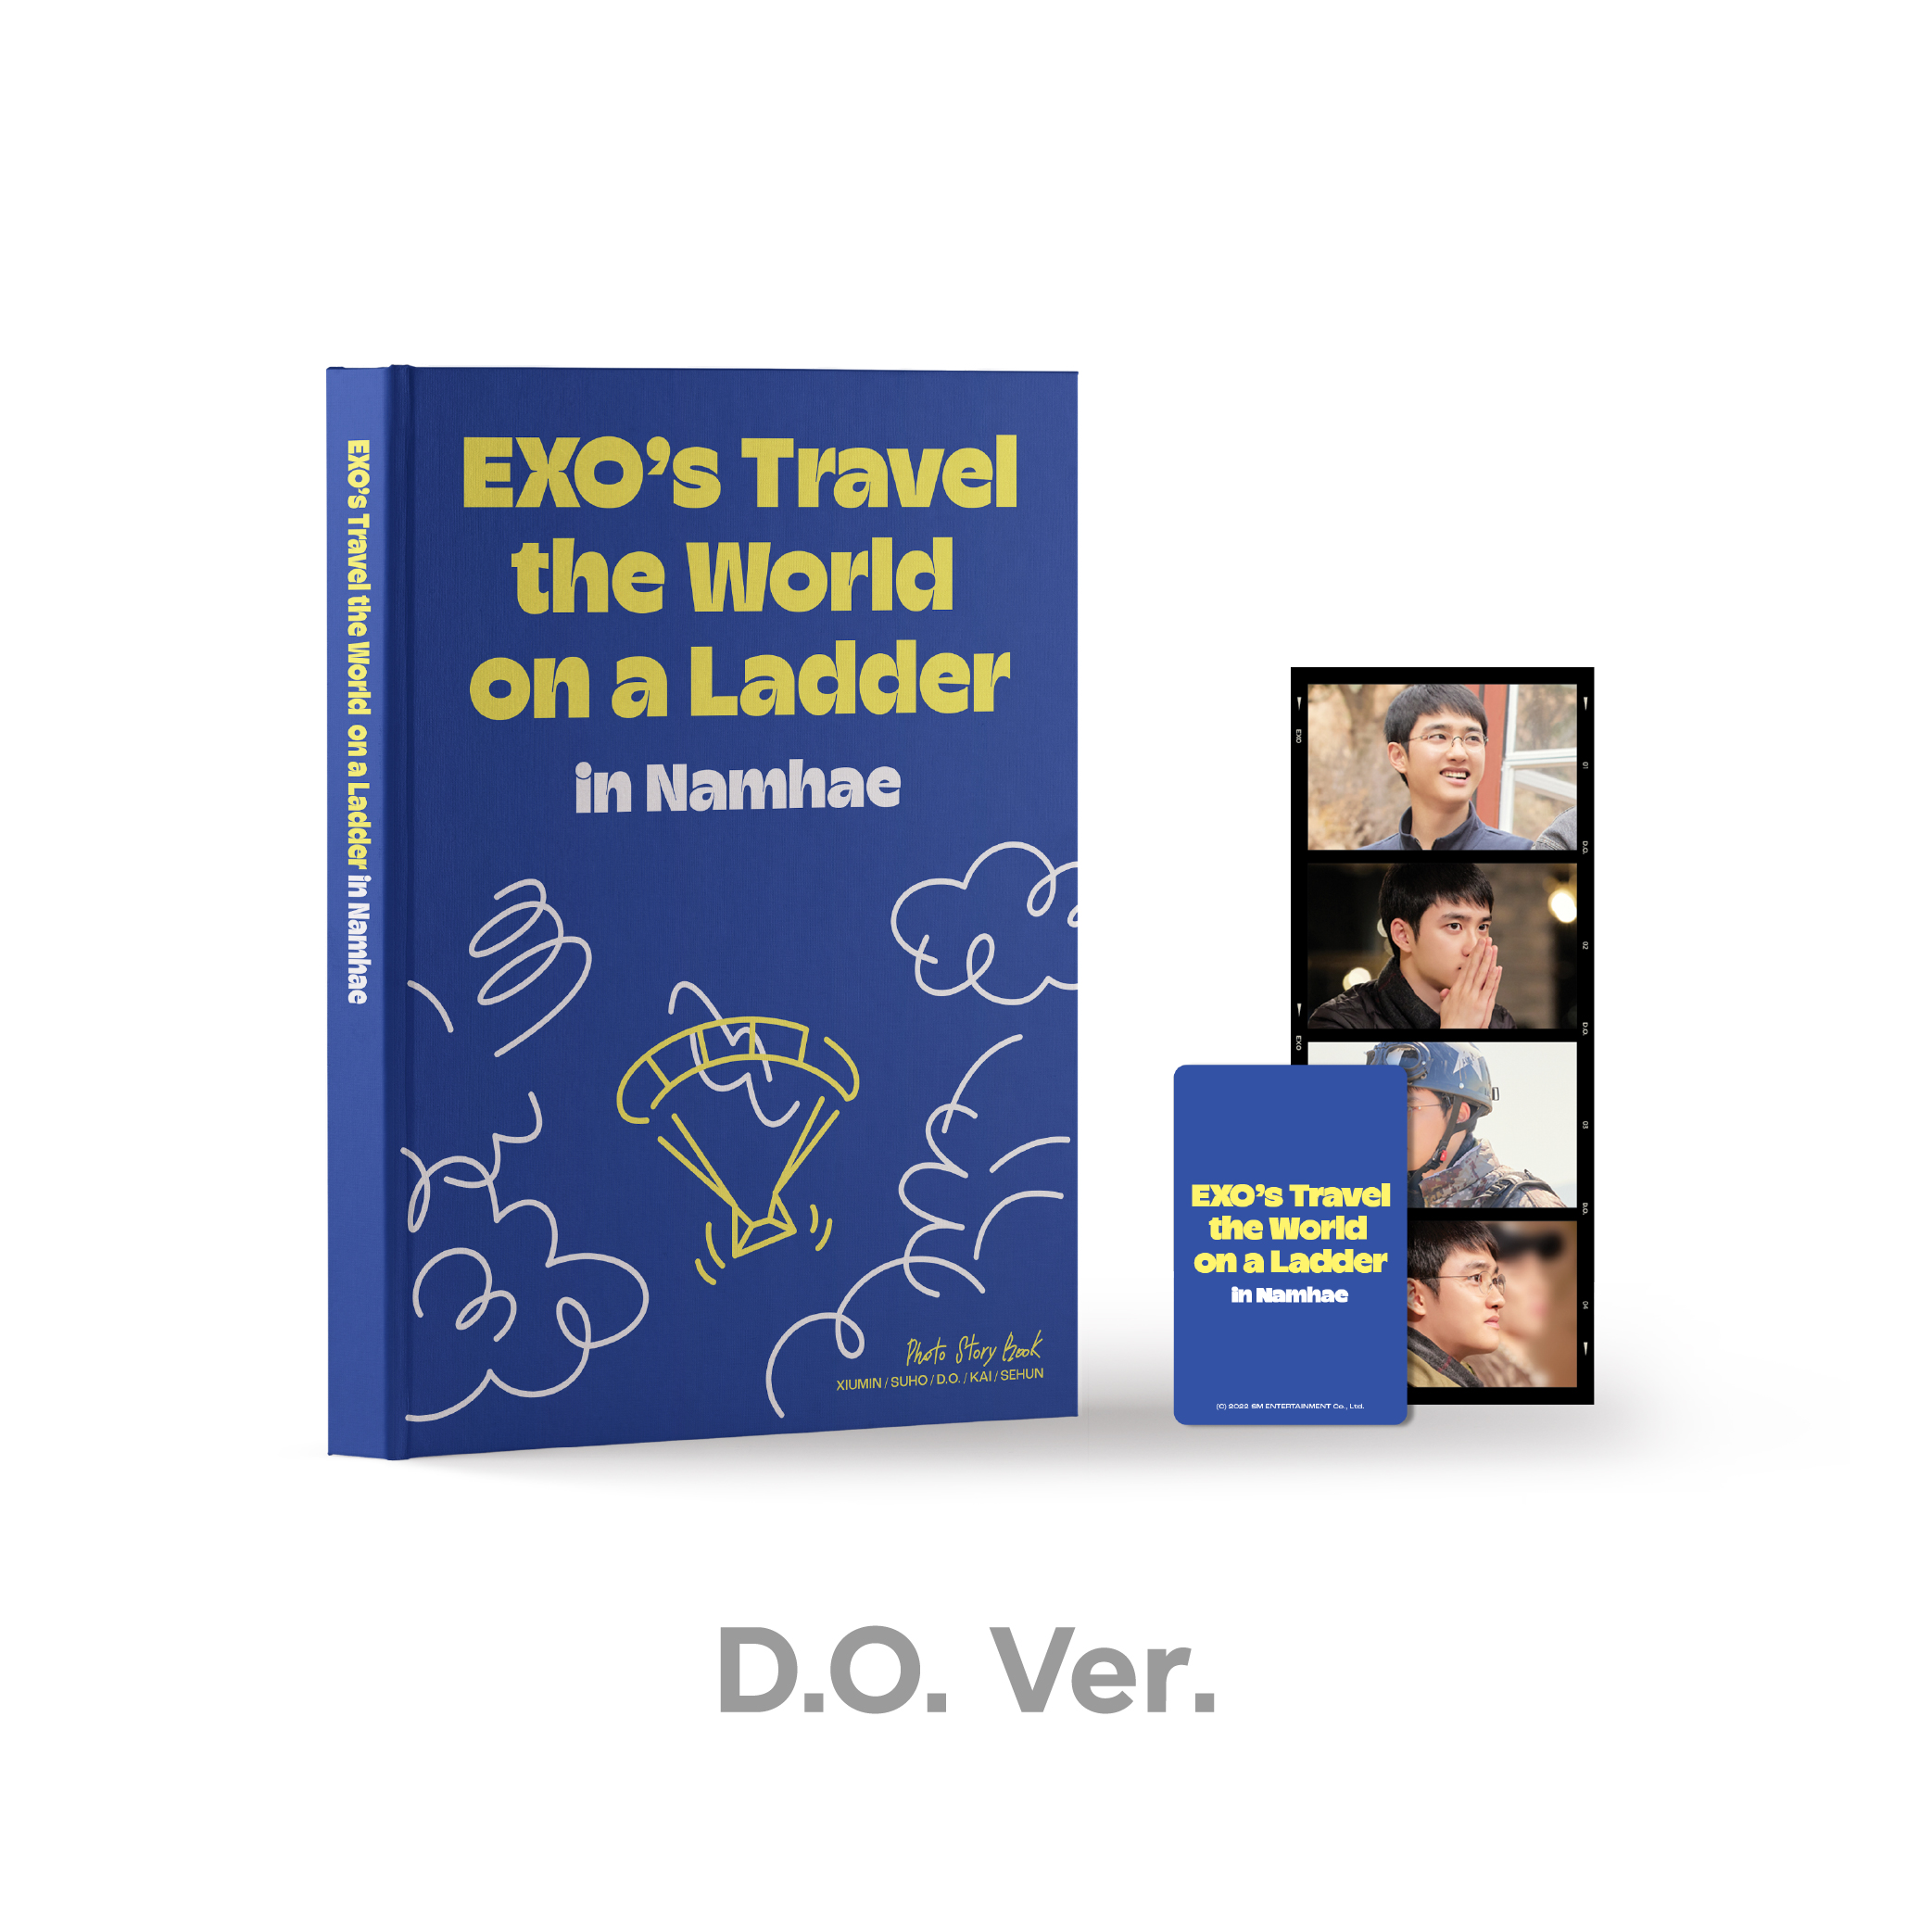 EXO(엑소) - <엑소의 사다리 타고 세계여행 - 남해 편> PHOTO STORY BOOK [D.O. Ver.]